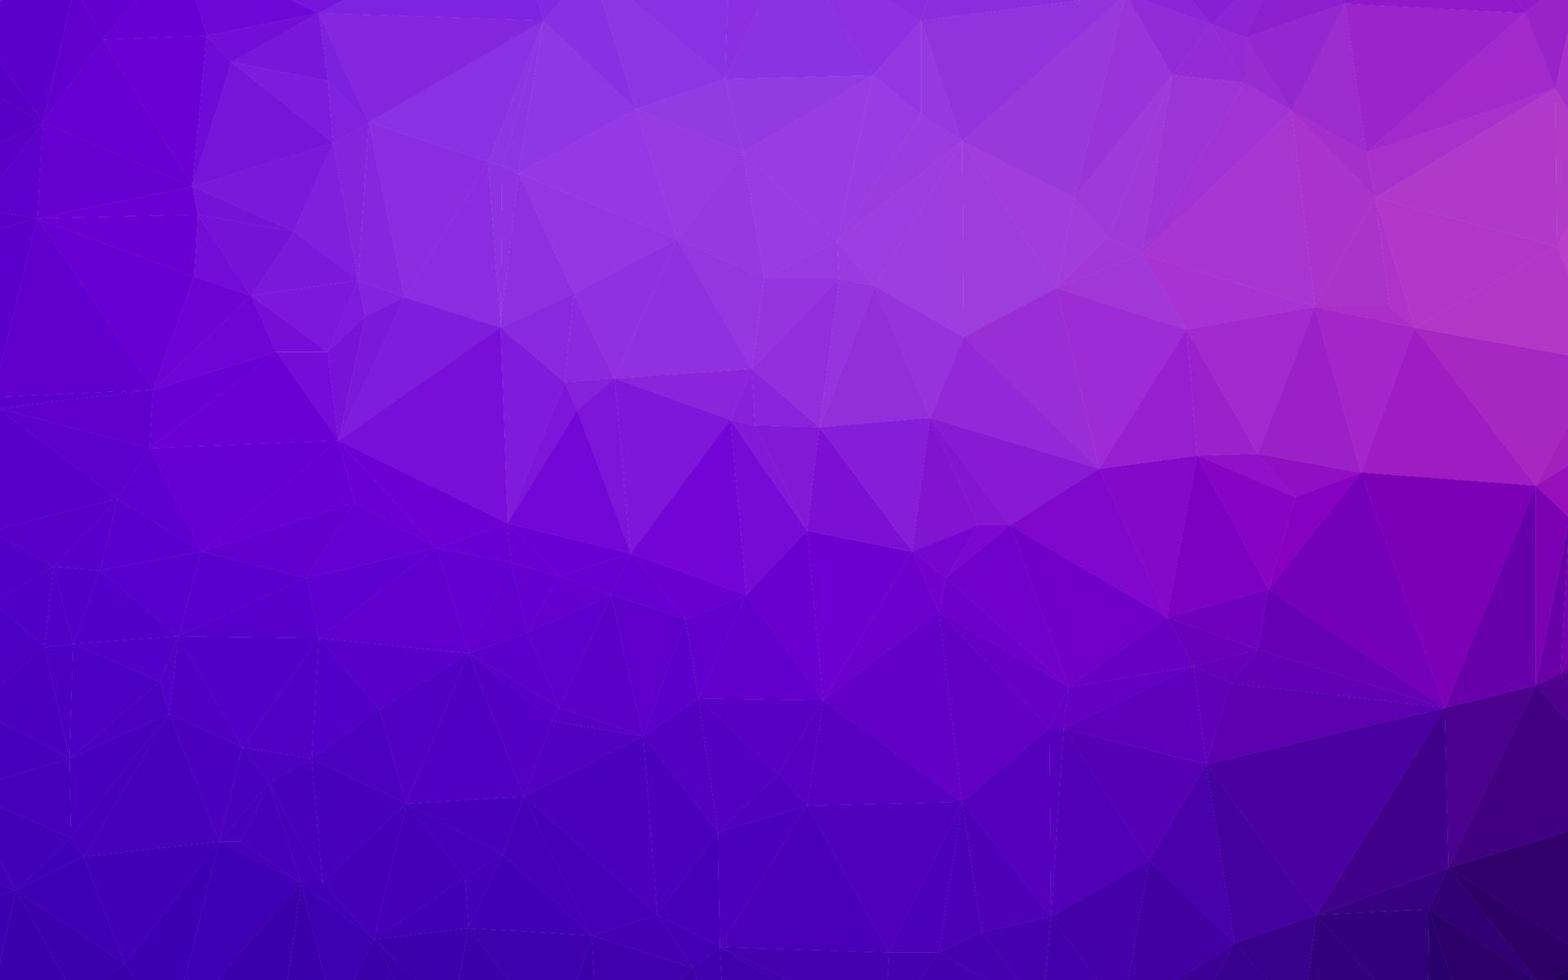 couverture polygonale abstraite de vecteur violet clair.